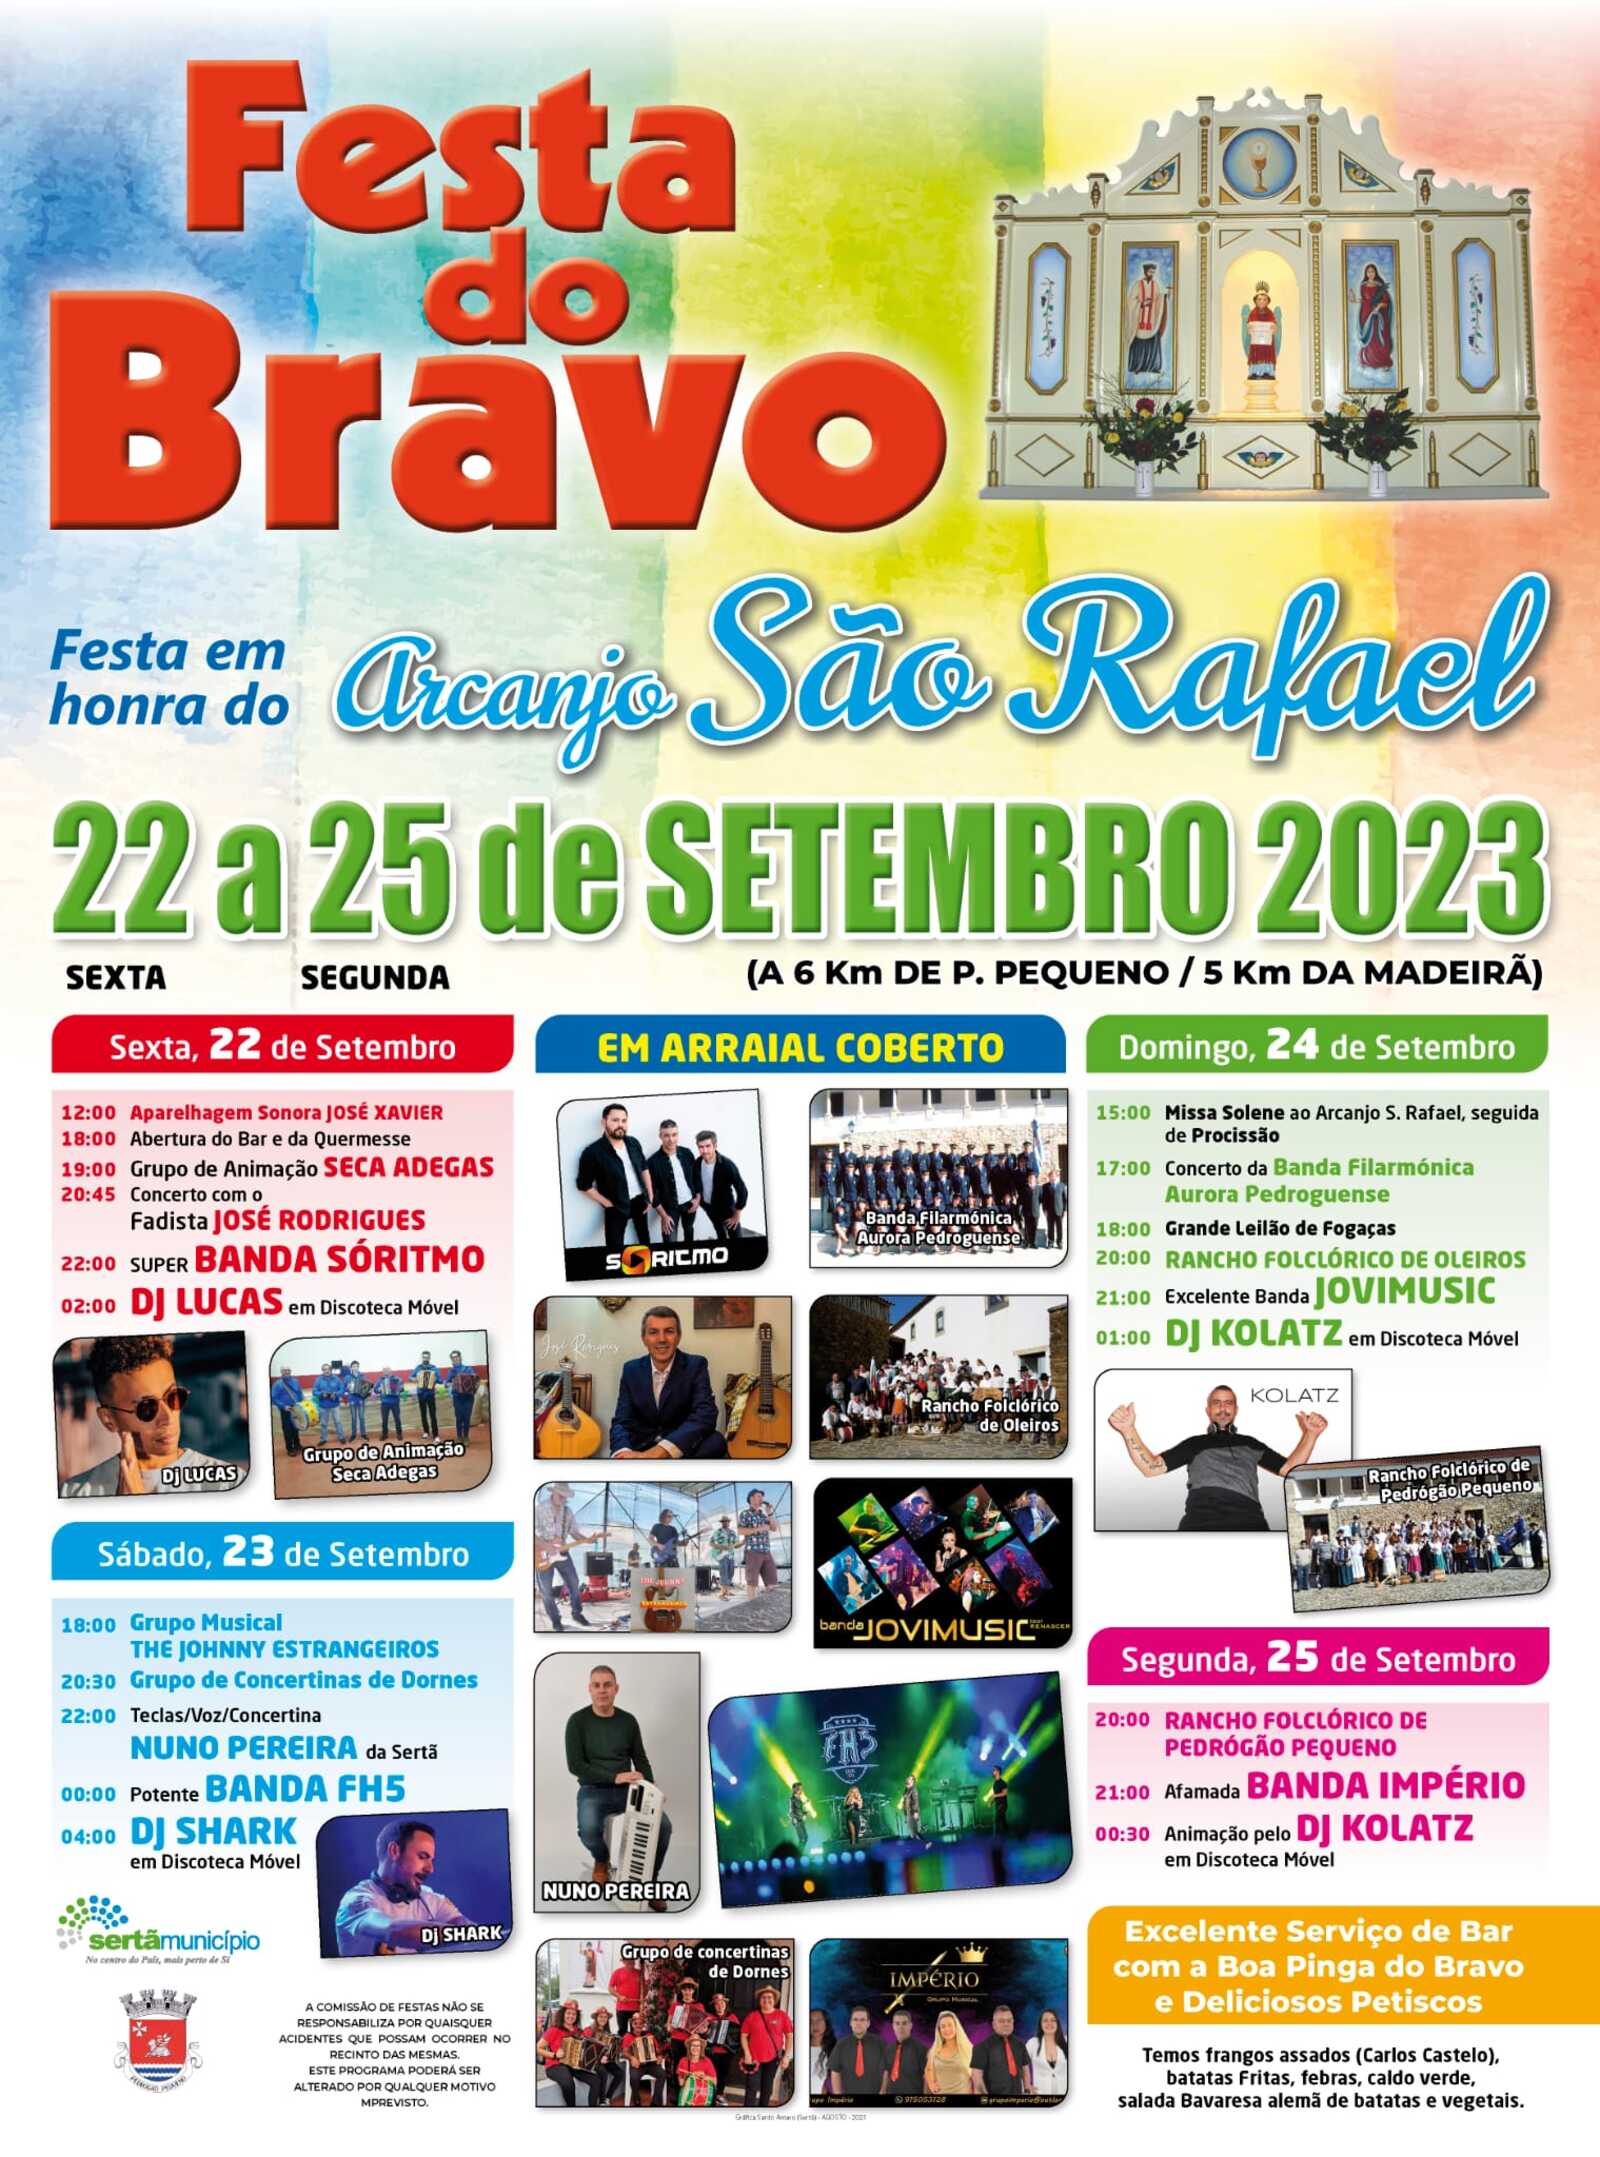 Festas Bravo 2023